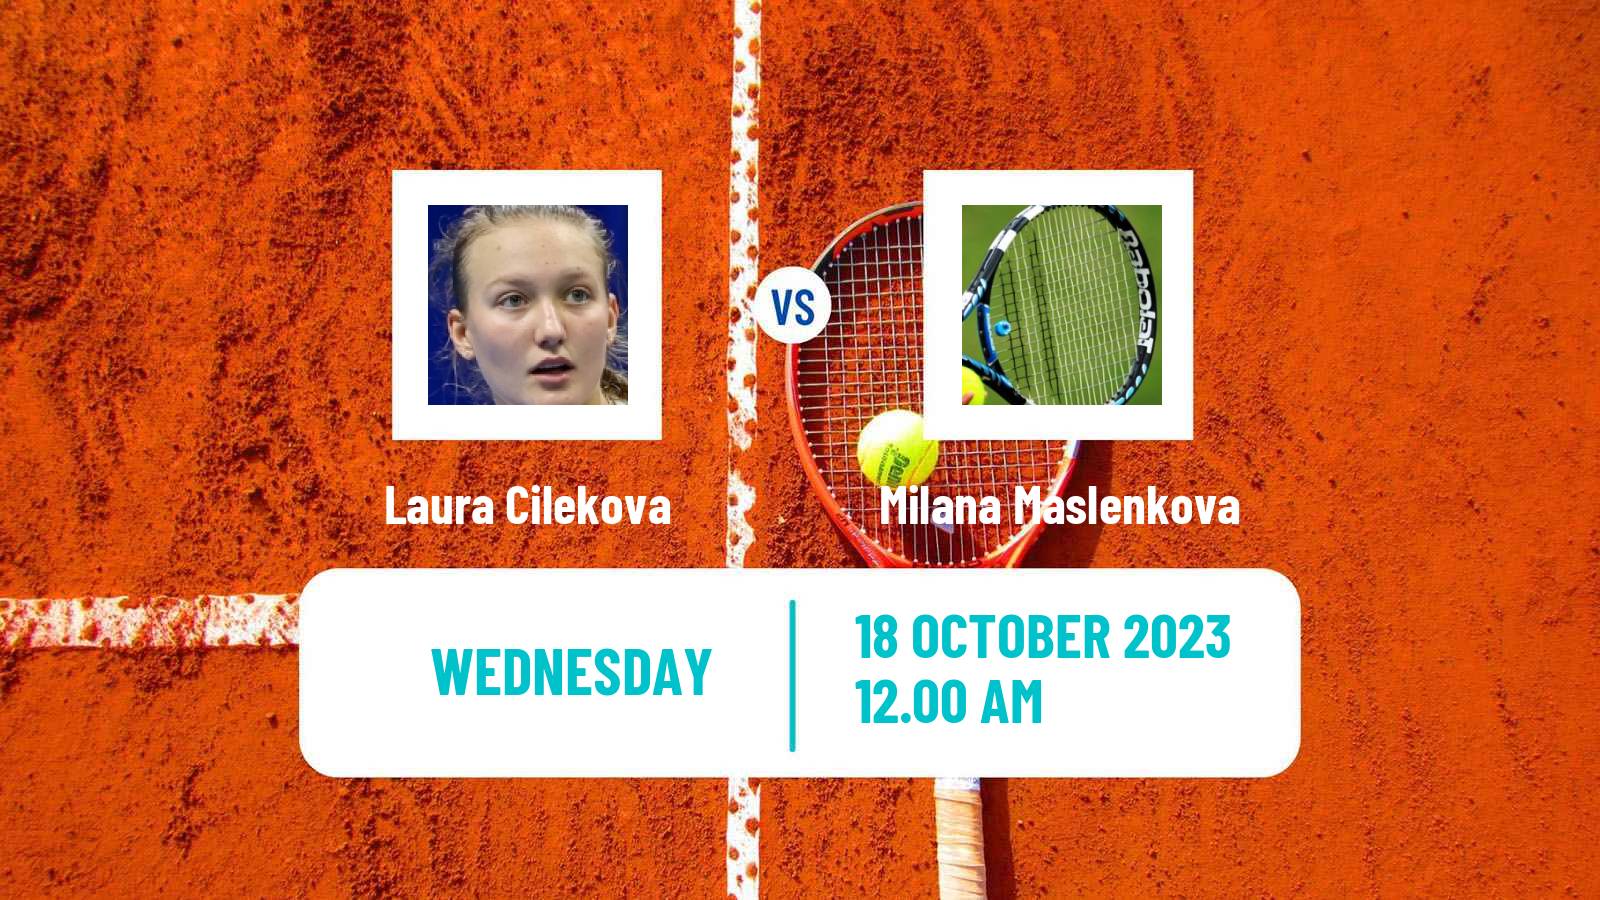 Tennis ITF W15 Hua Hin 2 Women Laura Cilekova - Milana Maslenkova